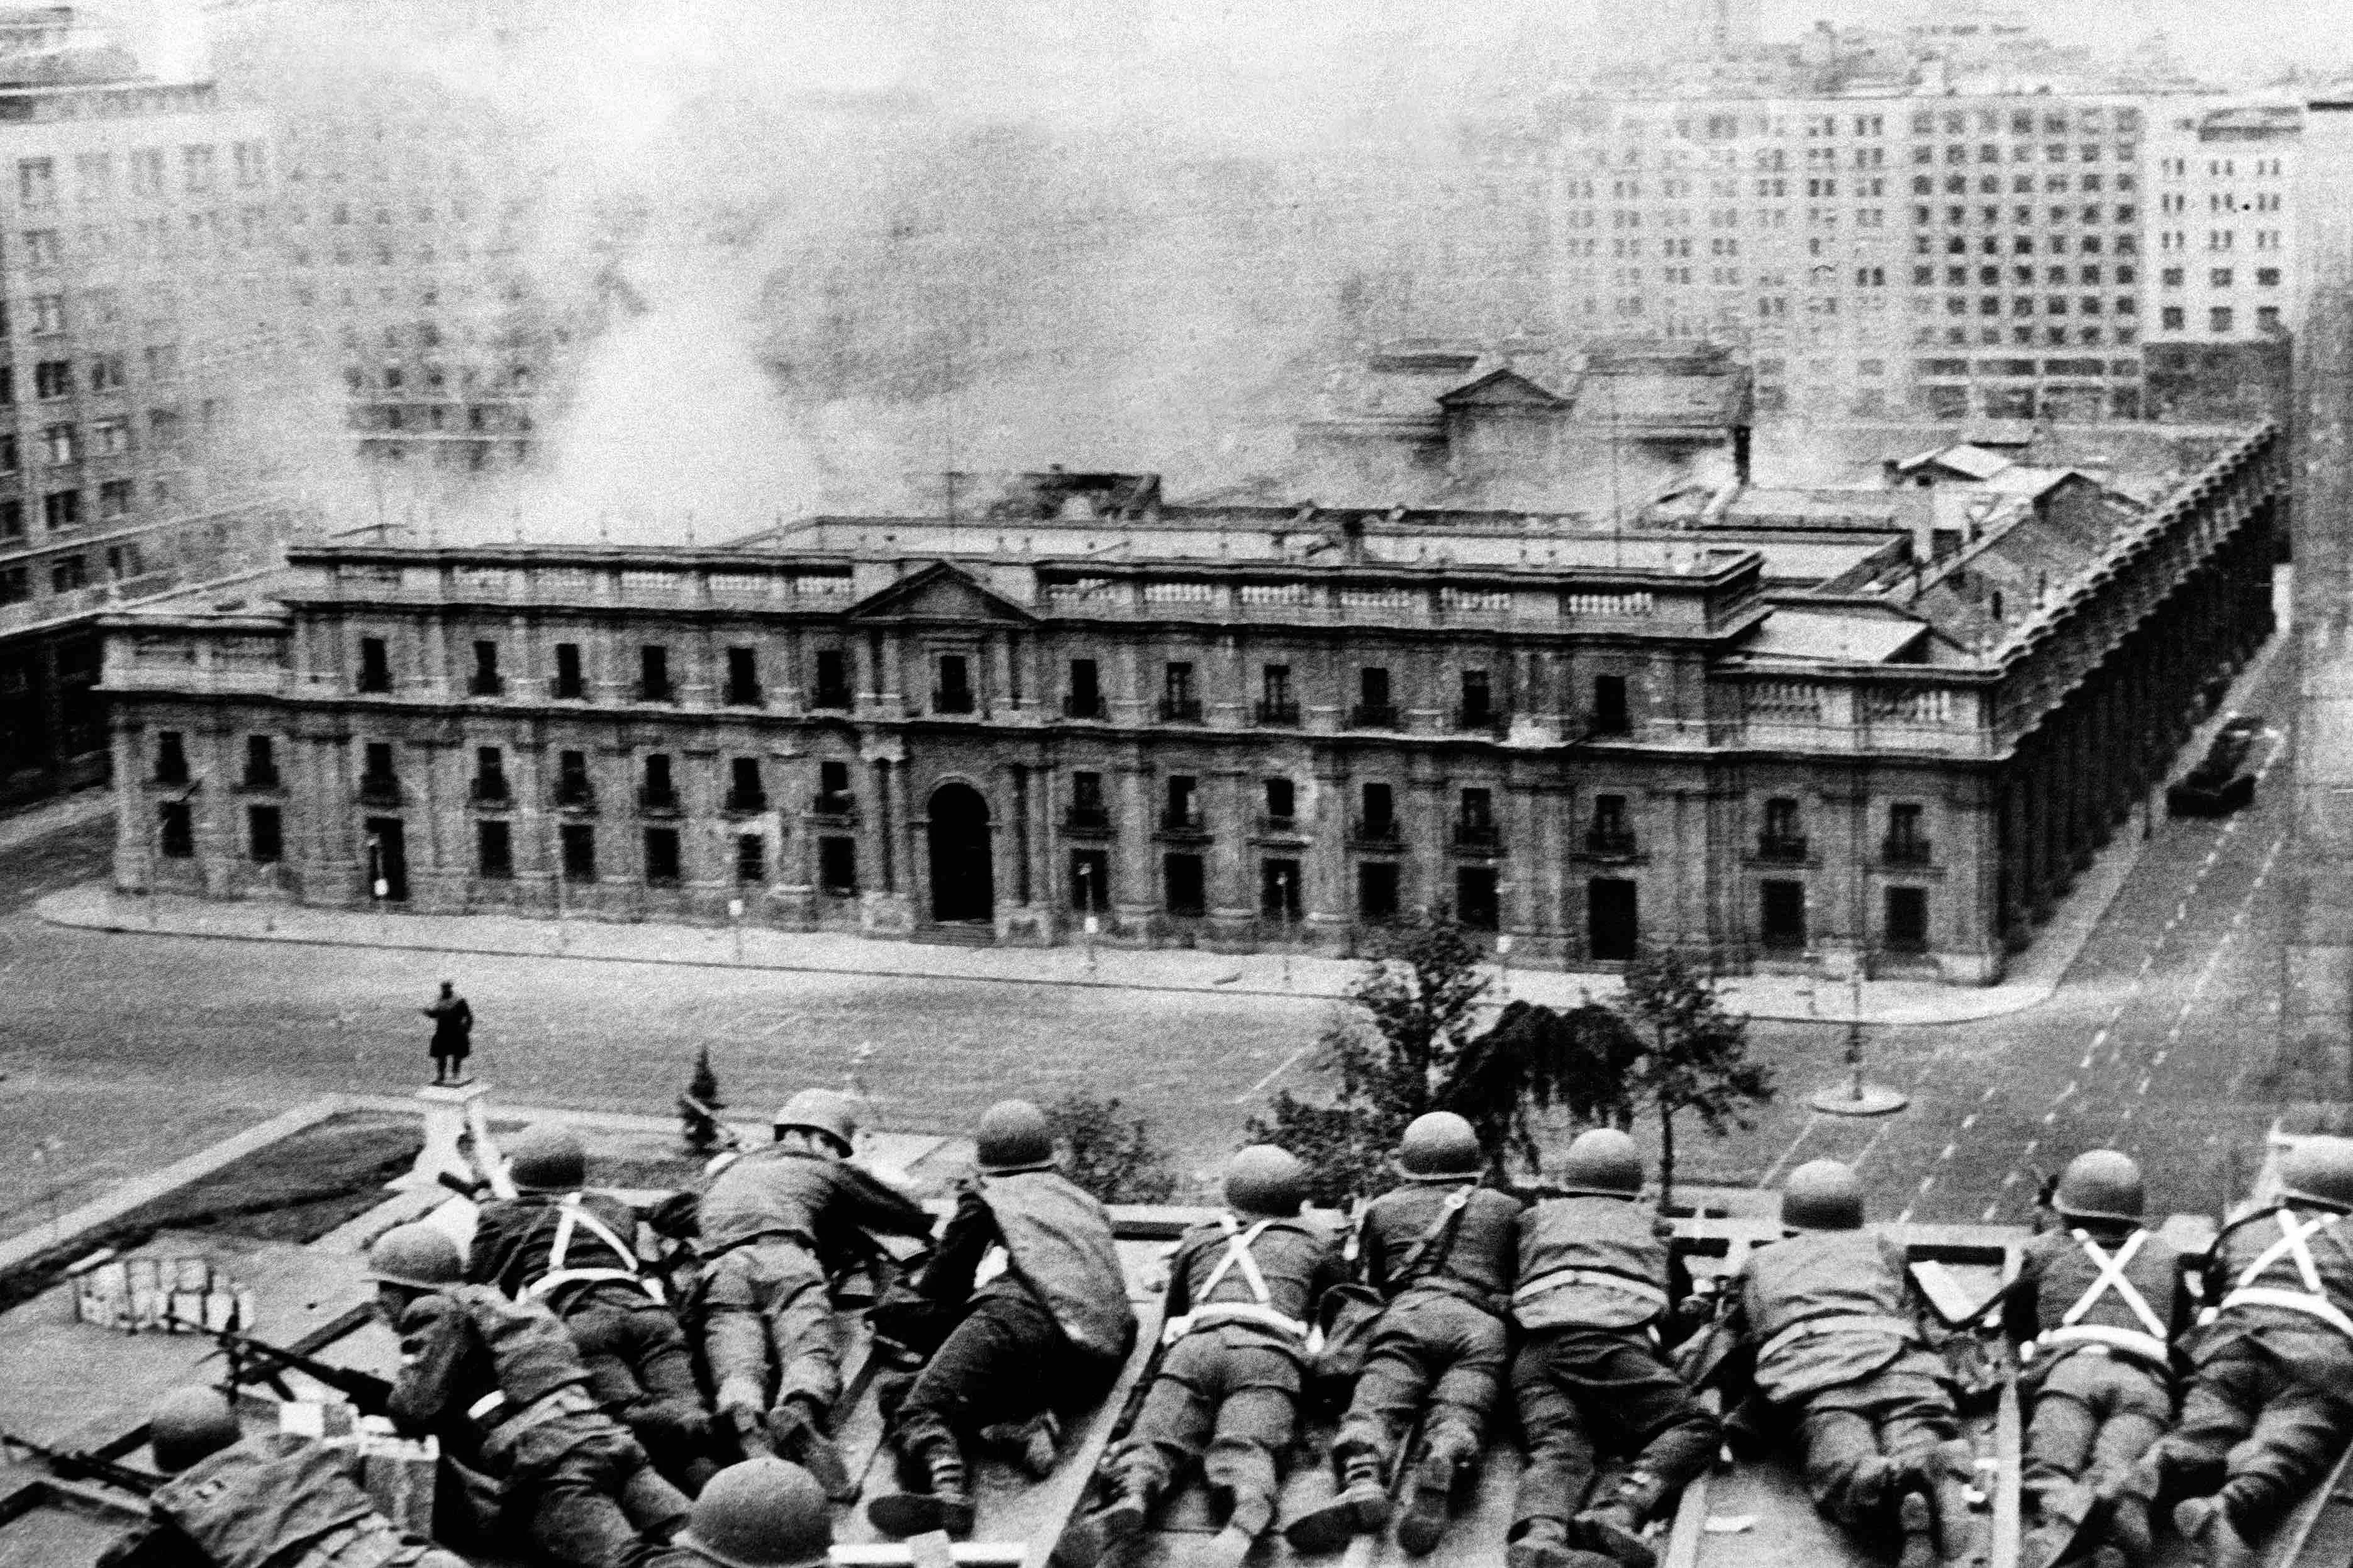 Tropes de l’exèrcit xilè posicionades al terrat d’un edifici de davant del palau presidencial, després de ser bombardejat, l’11 de setembre del 1973